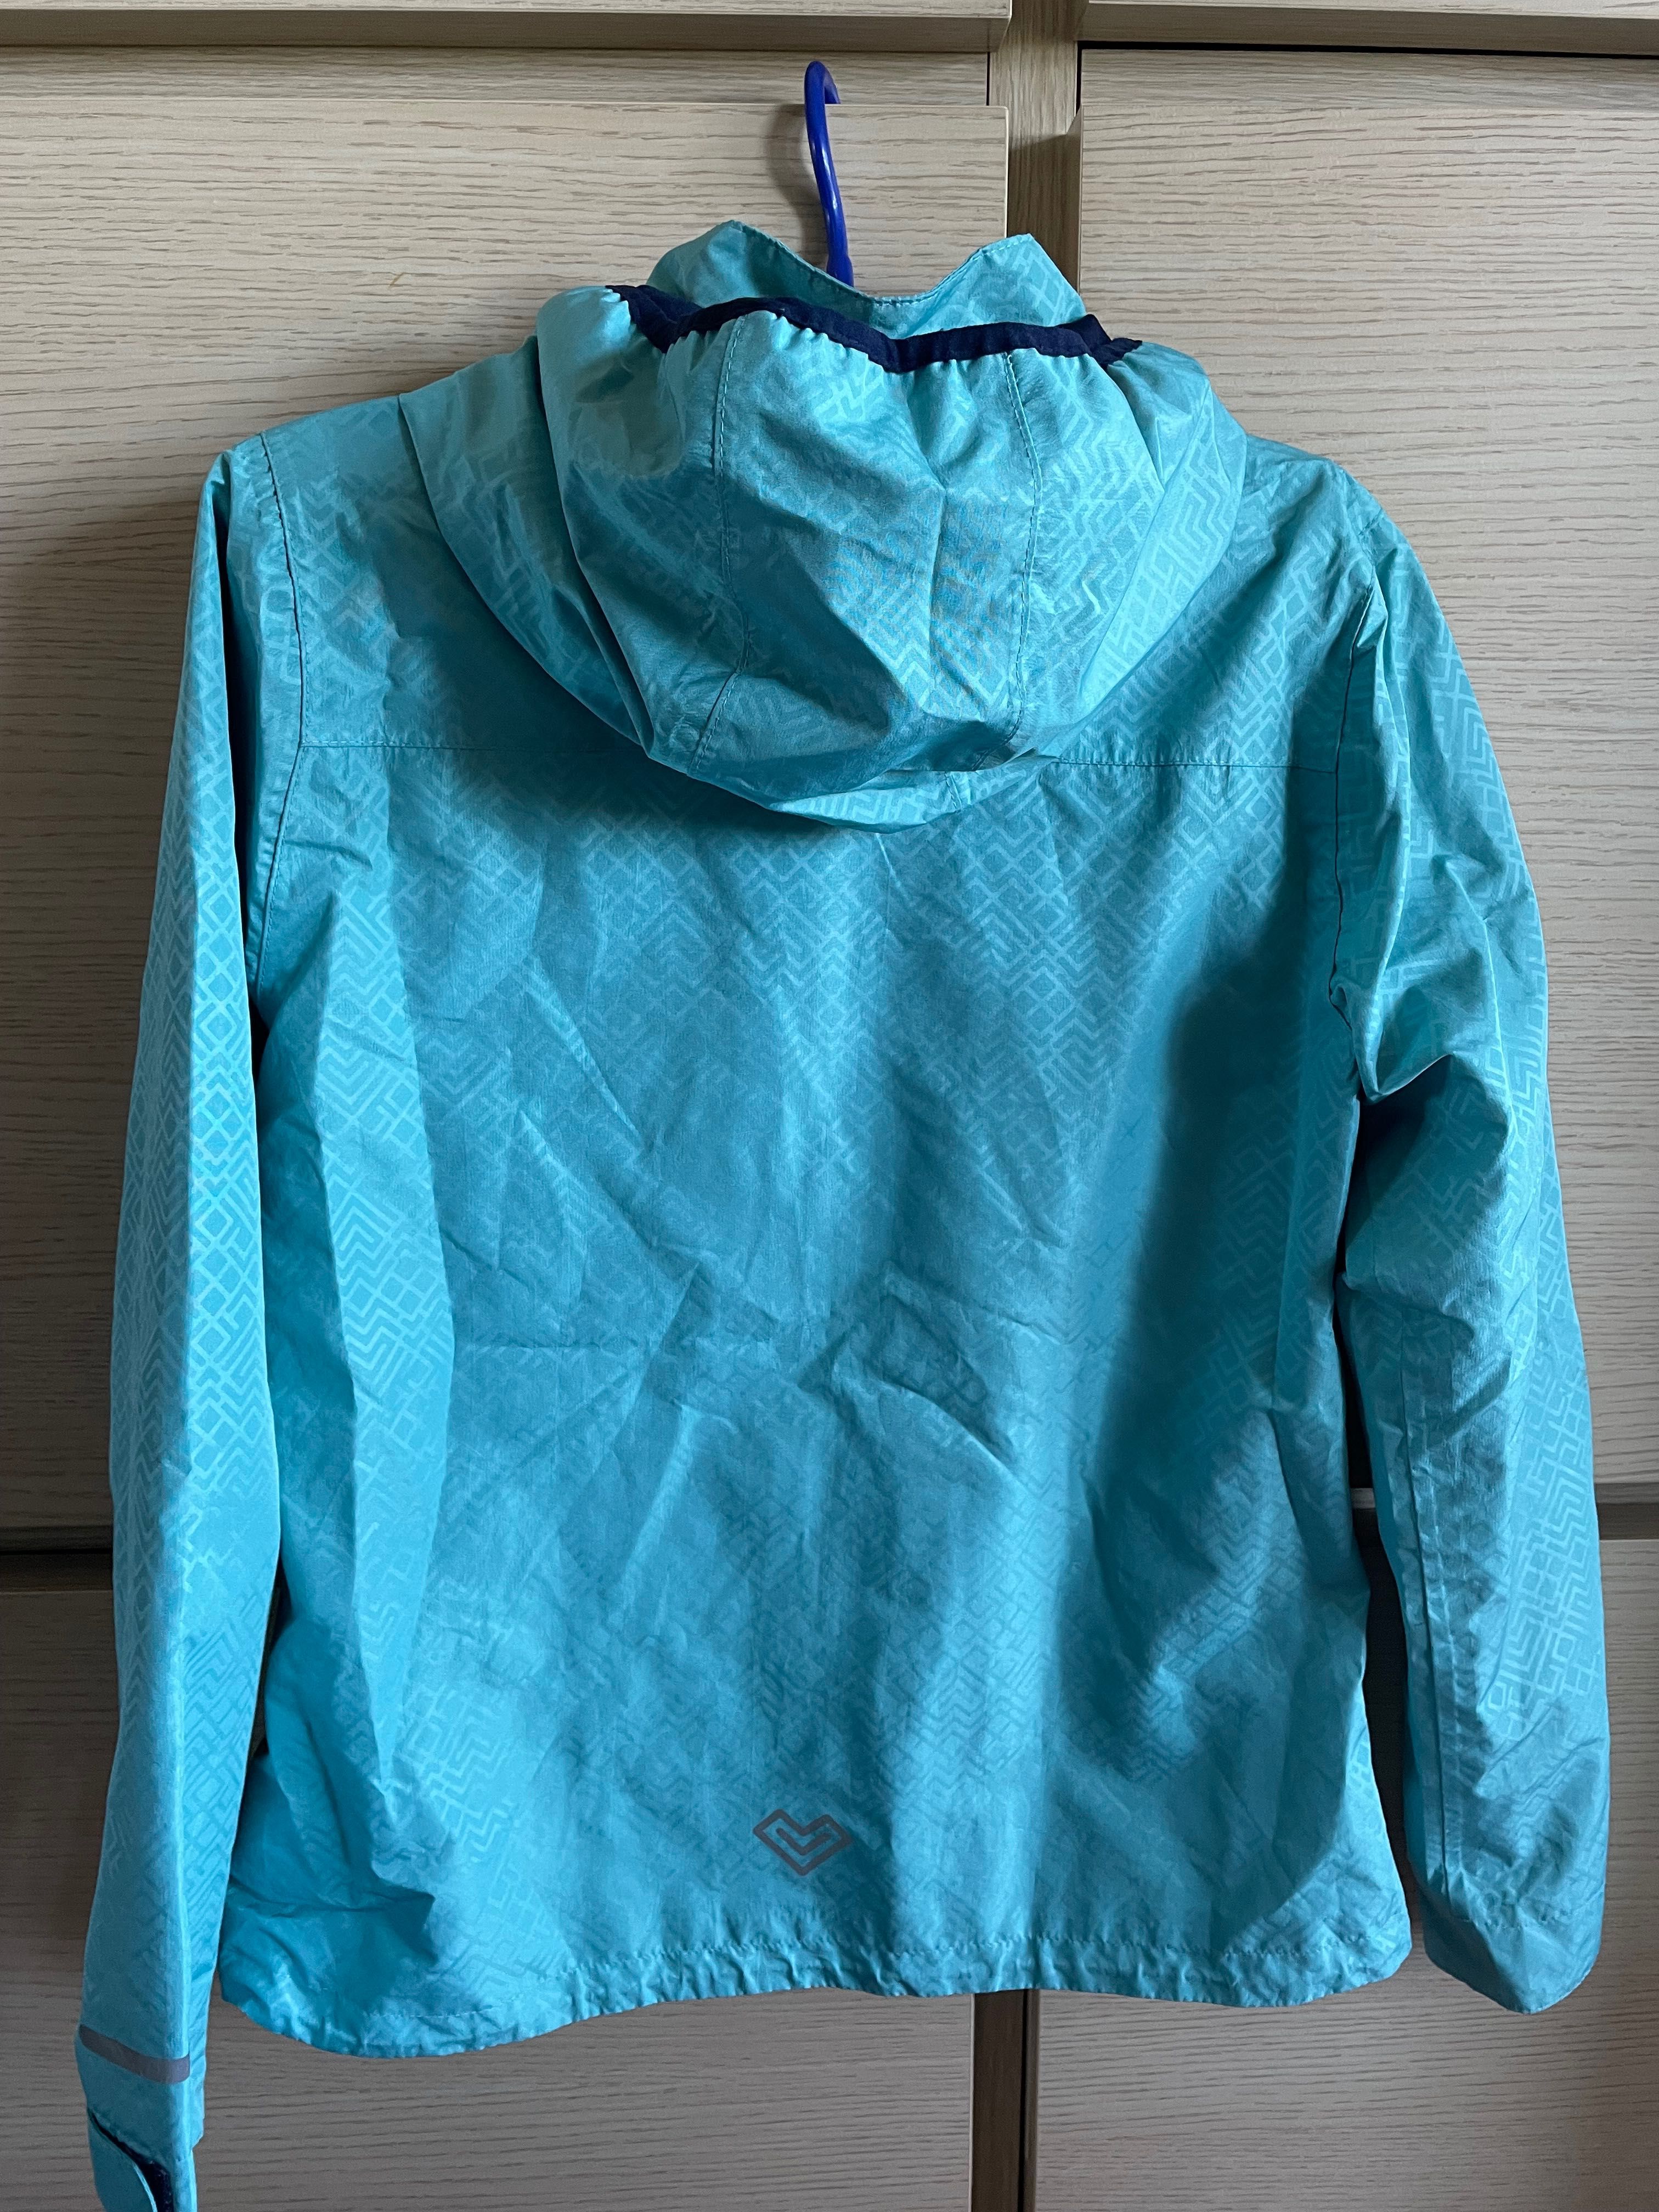 Нова куртка/вітрівка/дощовик на підлітка Сrivit р. 158 на 12-13 років